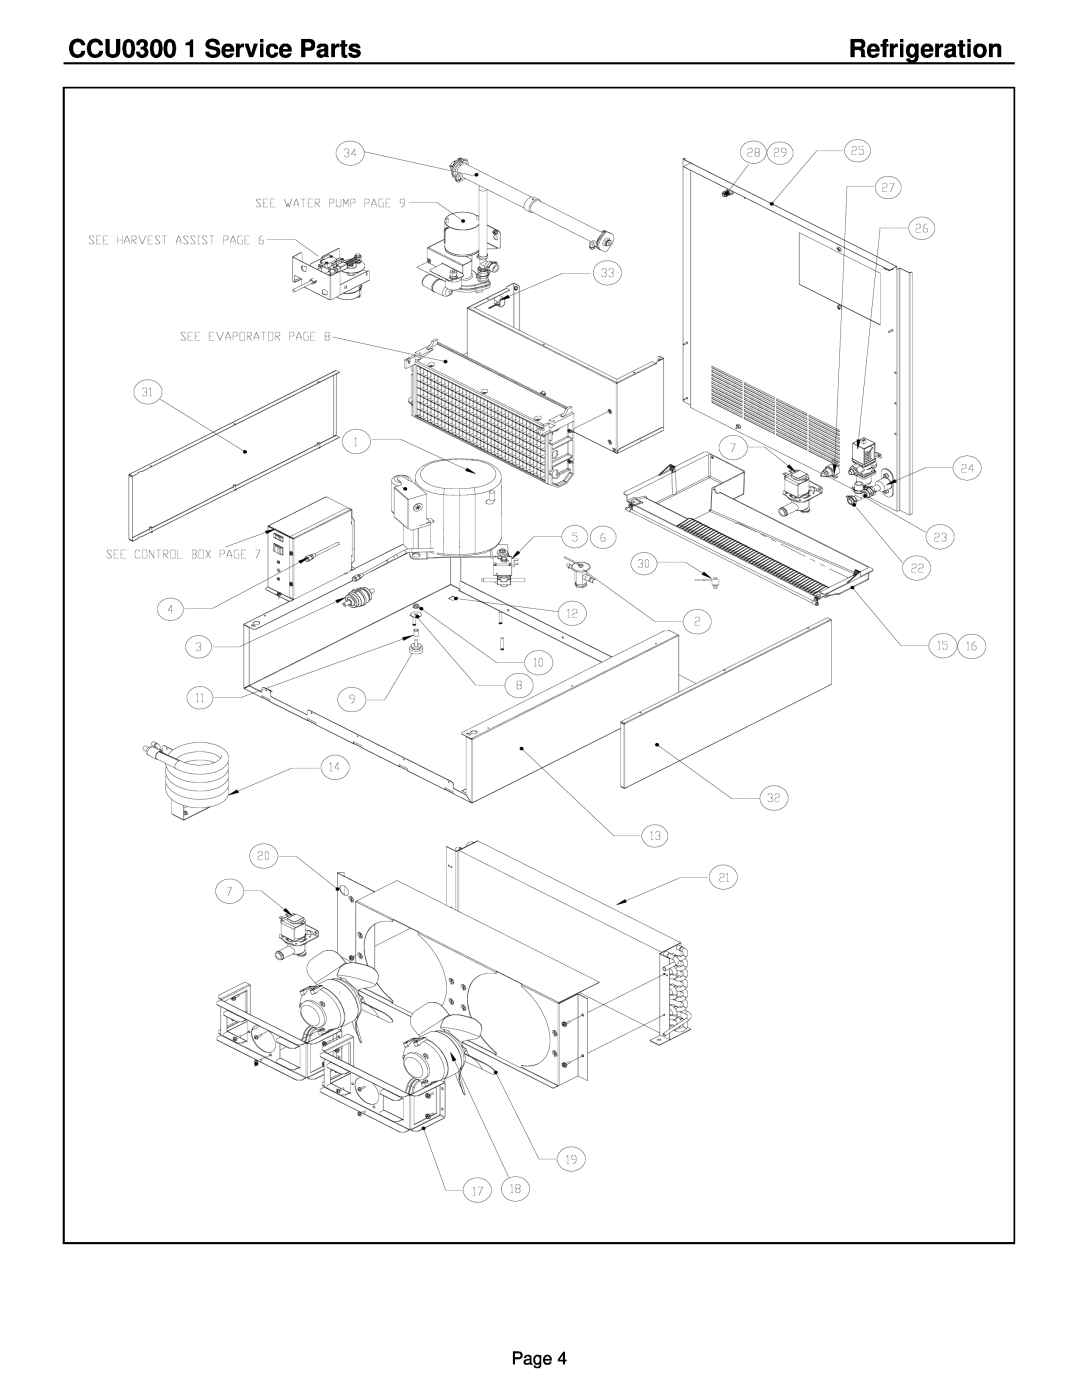 Cornelius manual Refrigeration, CCU0300 1 Service Parts, Page 